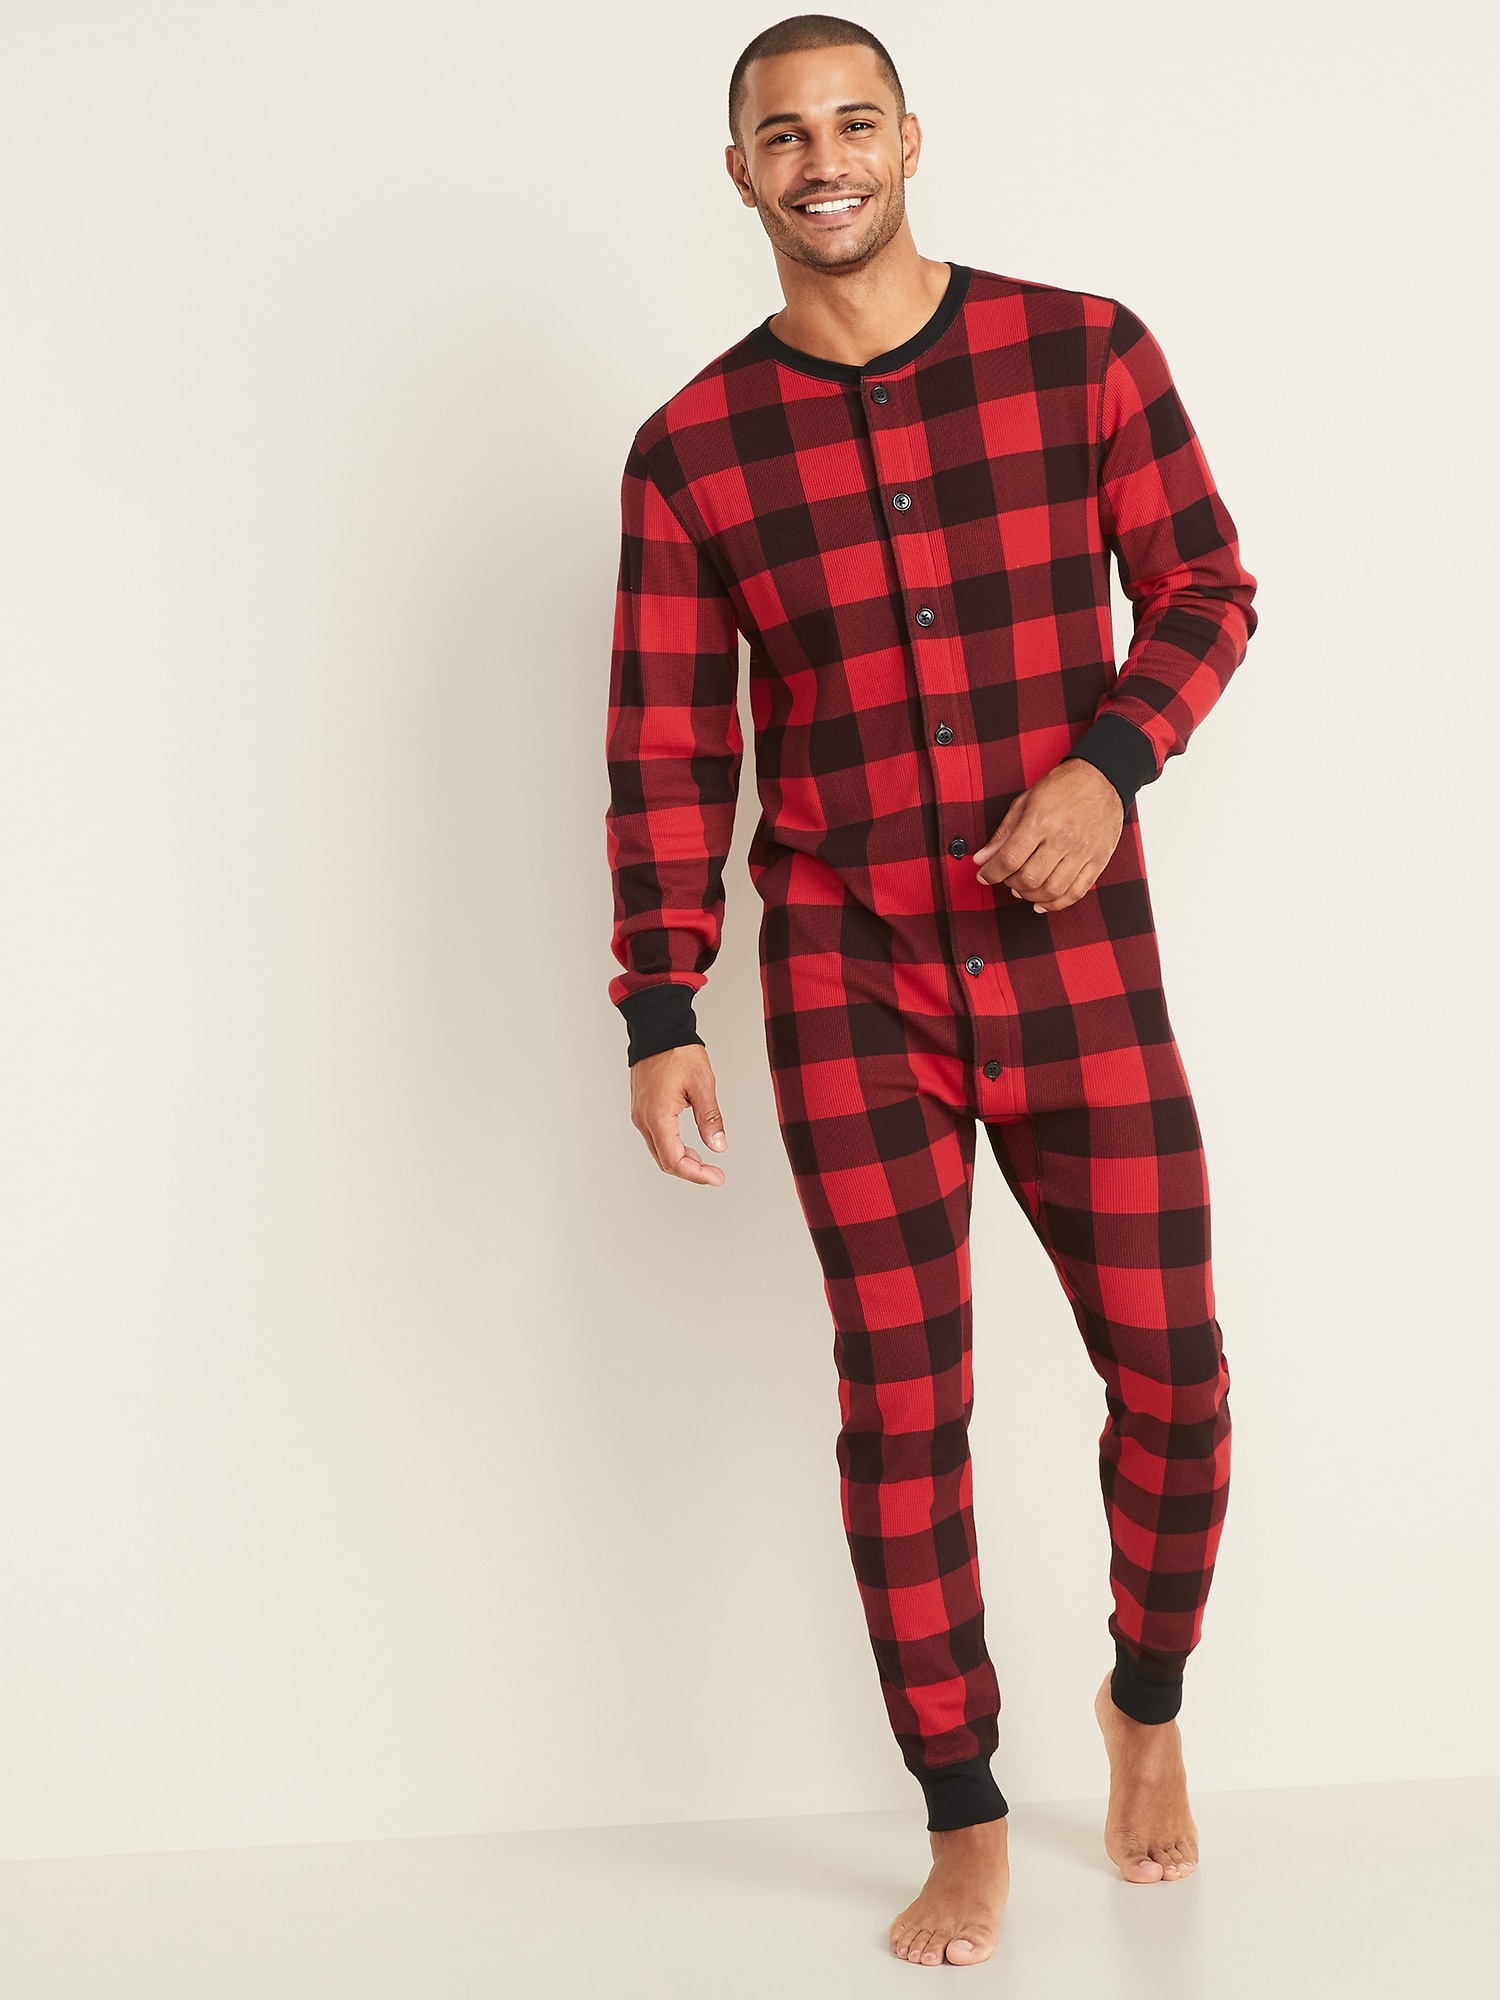 Thermal-Knit Union Suit One-Piece Pajamas